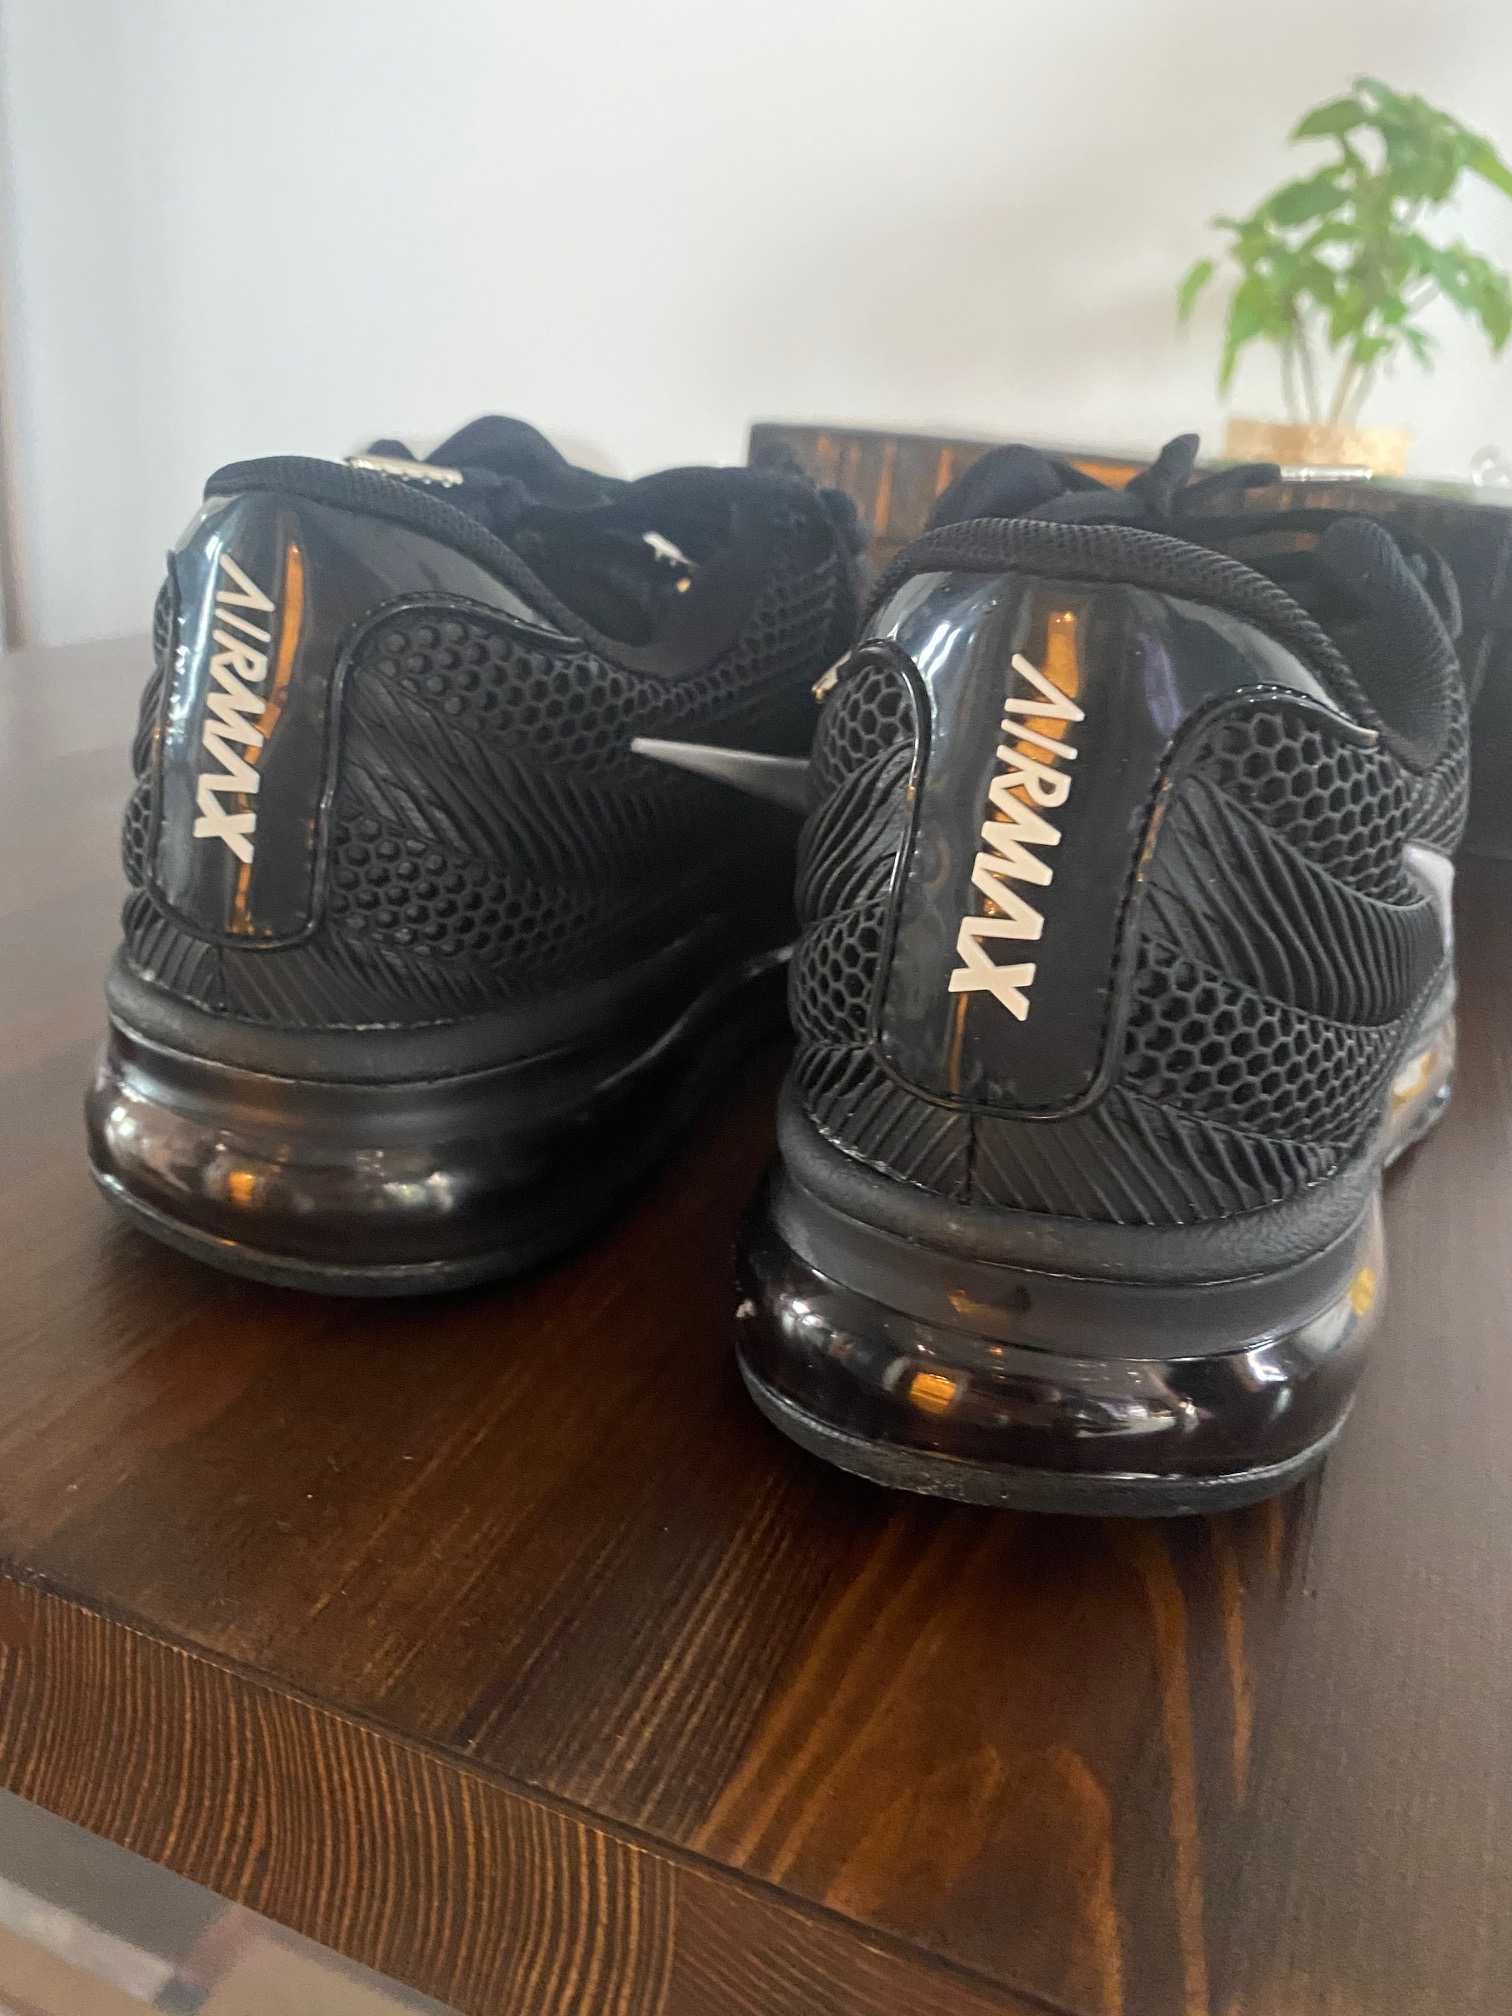 Buty Nike Air Max męskie , czarne, rozmiar 44, wkładka 28cm